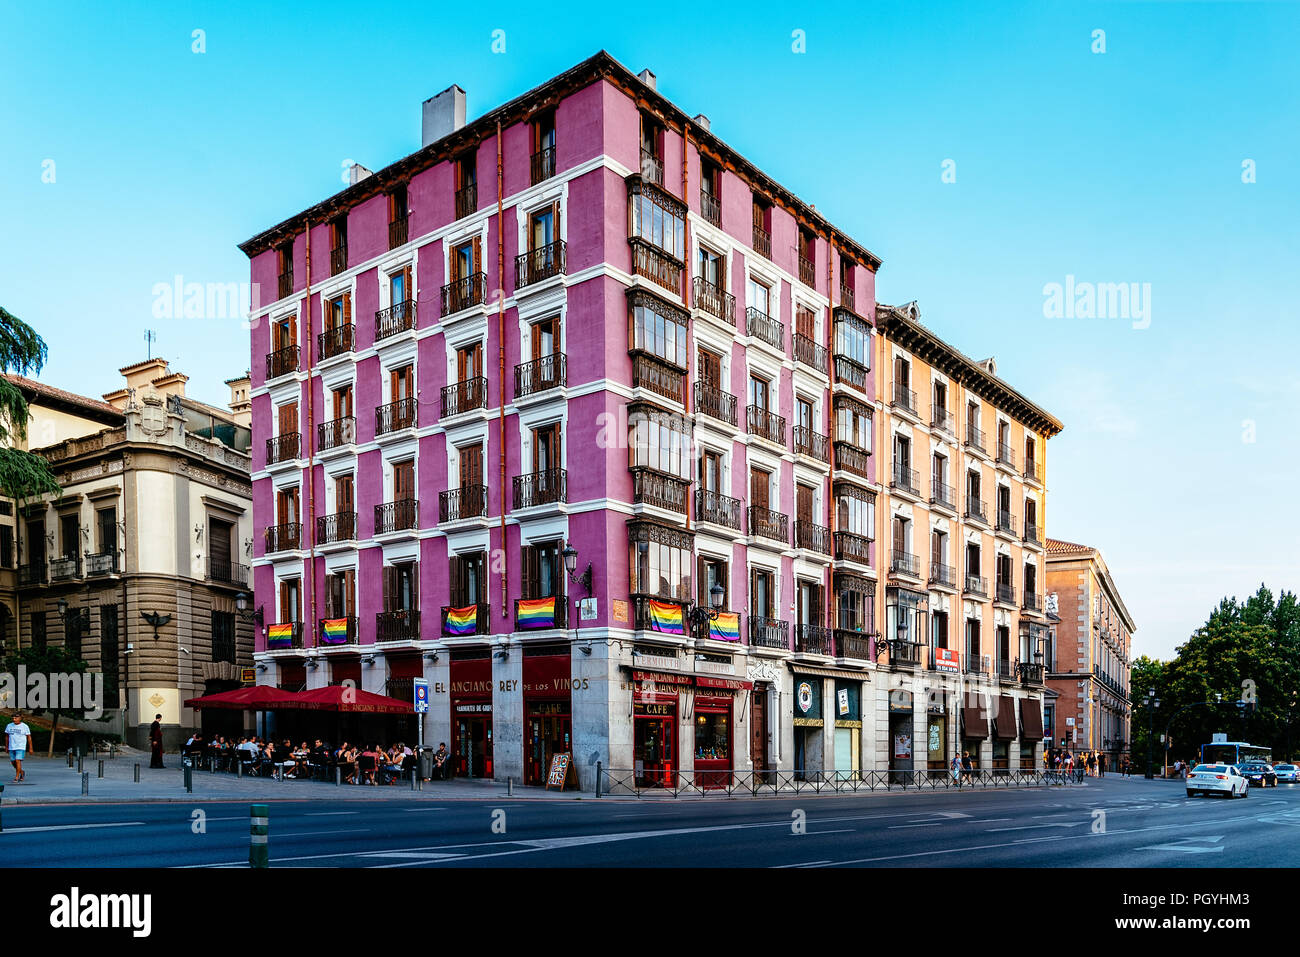 Madrid, Spagna - 25 agosto 2018: Bailen Street nel centro storico della città al tramonto. Foto Stock